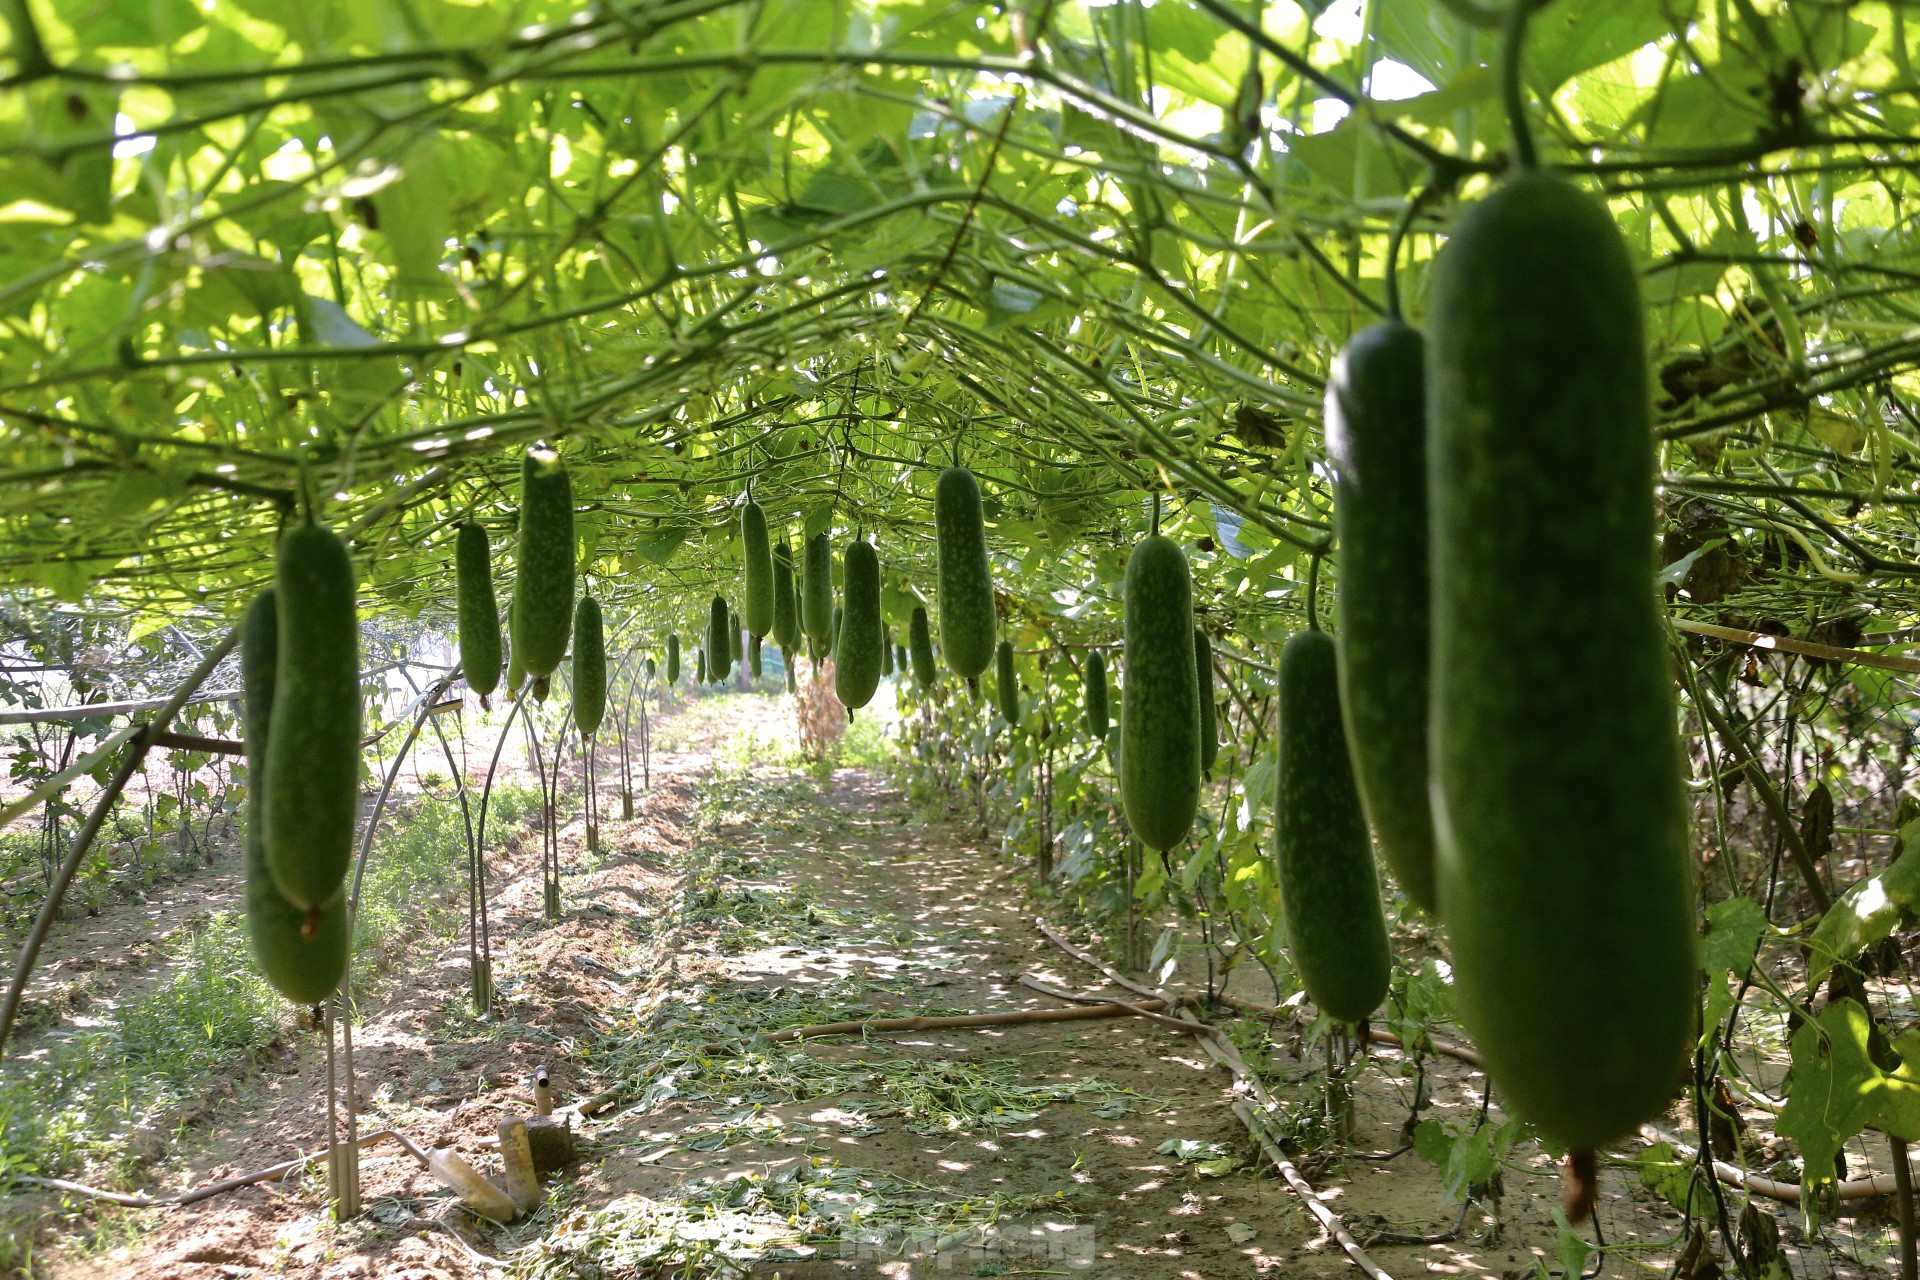 Nông dân ở làng rau này ở Đà Nẵng dùng "độc chiêu" giúp những vườn mướp của mình cho trái to, dài, thẳng tắp- Ảnh 13.